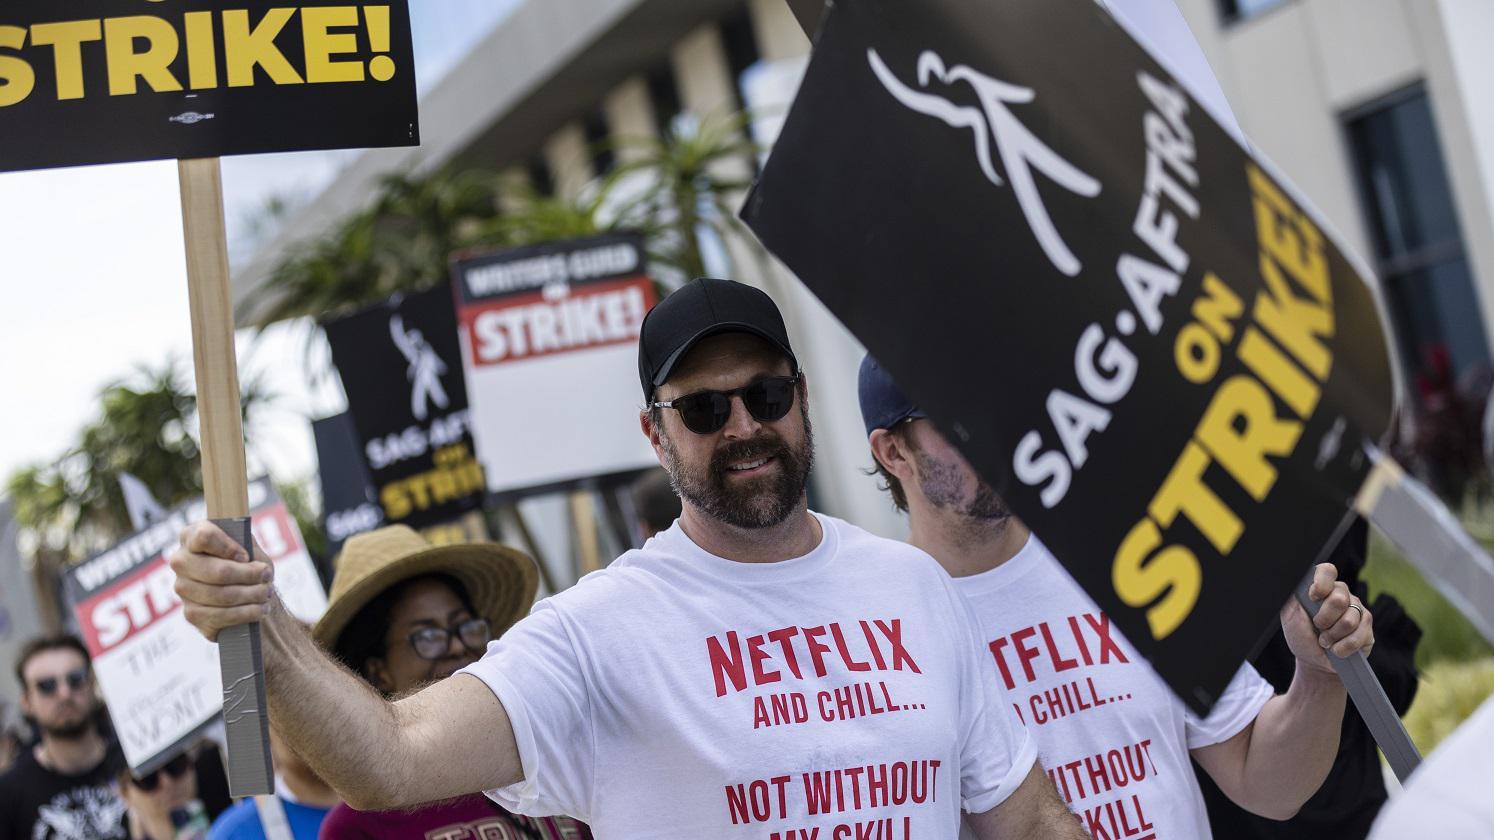 Pessoas protestando e levantando cartazes; na camisa, há menção (e críticas) à Netflix